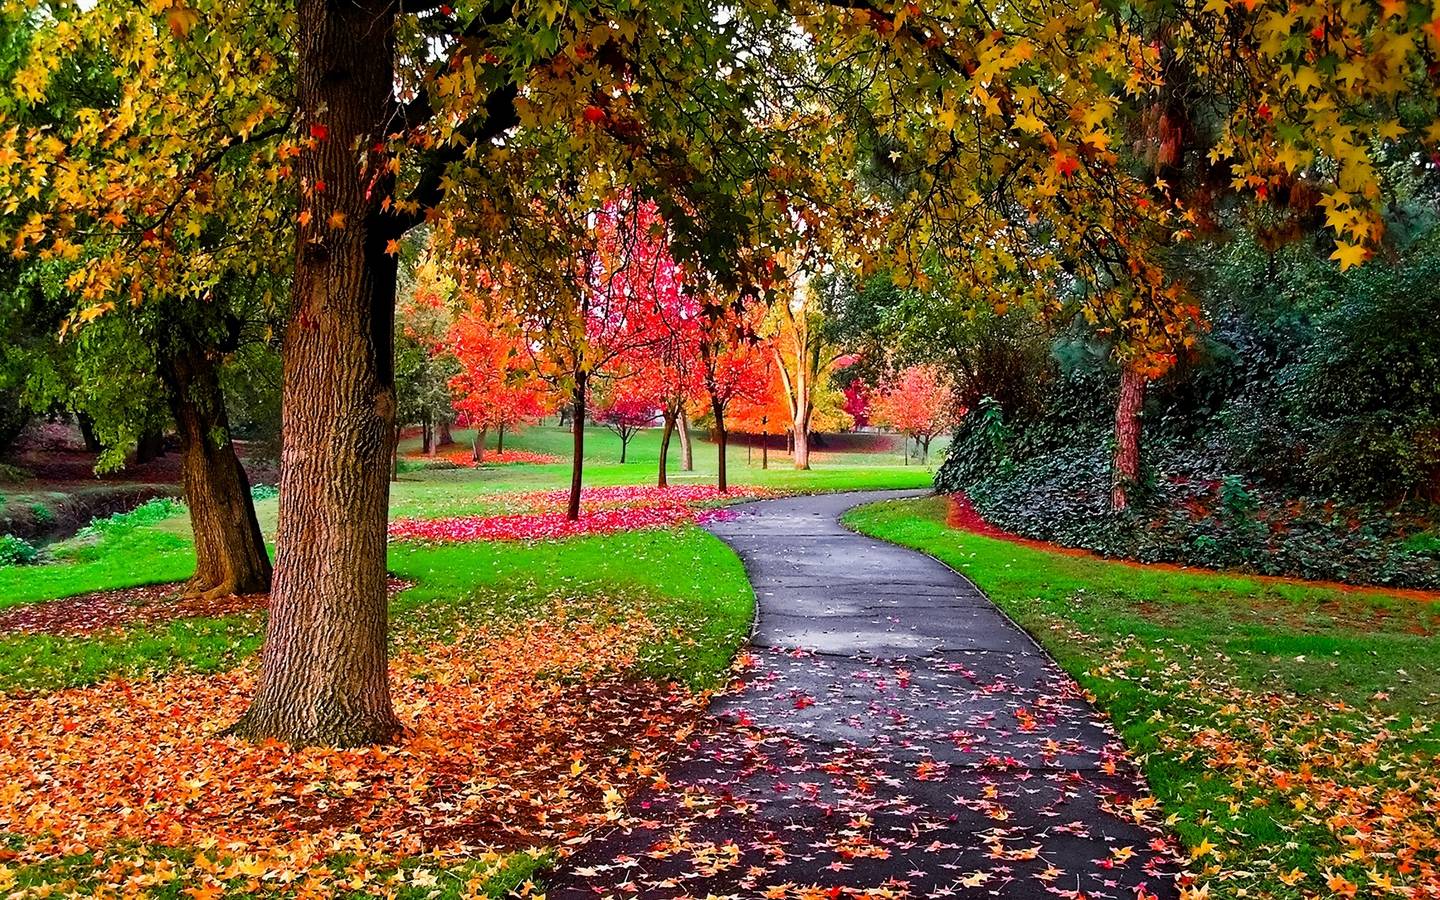 Autumn-in-the-Park-autumn-25517310-1440-900.jpg